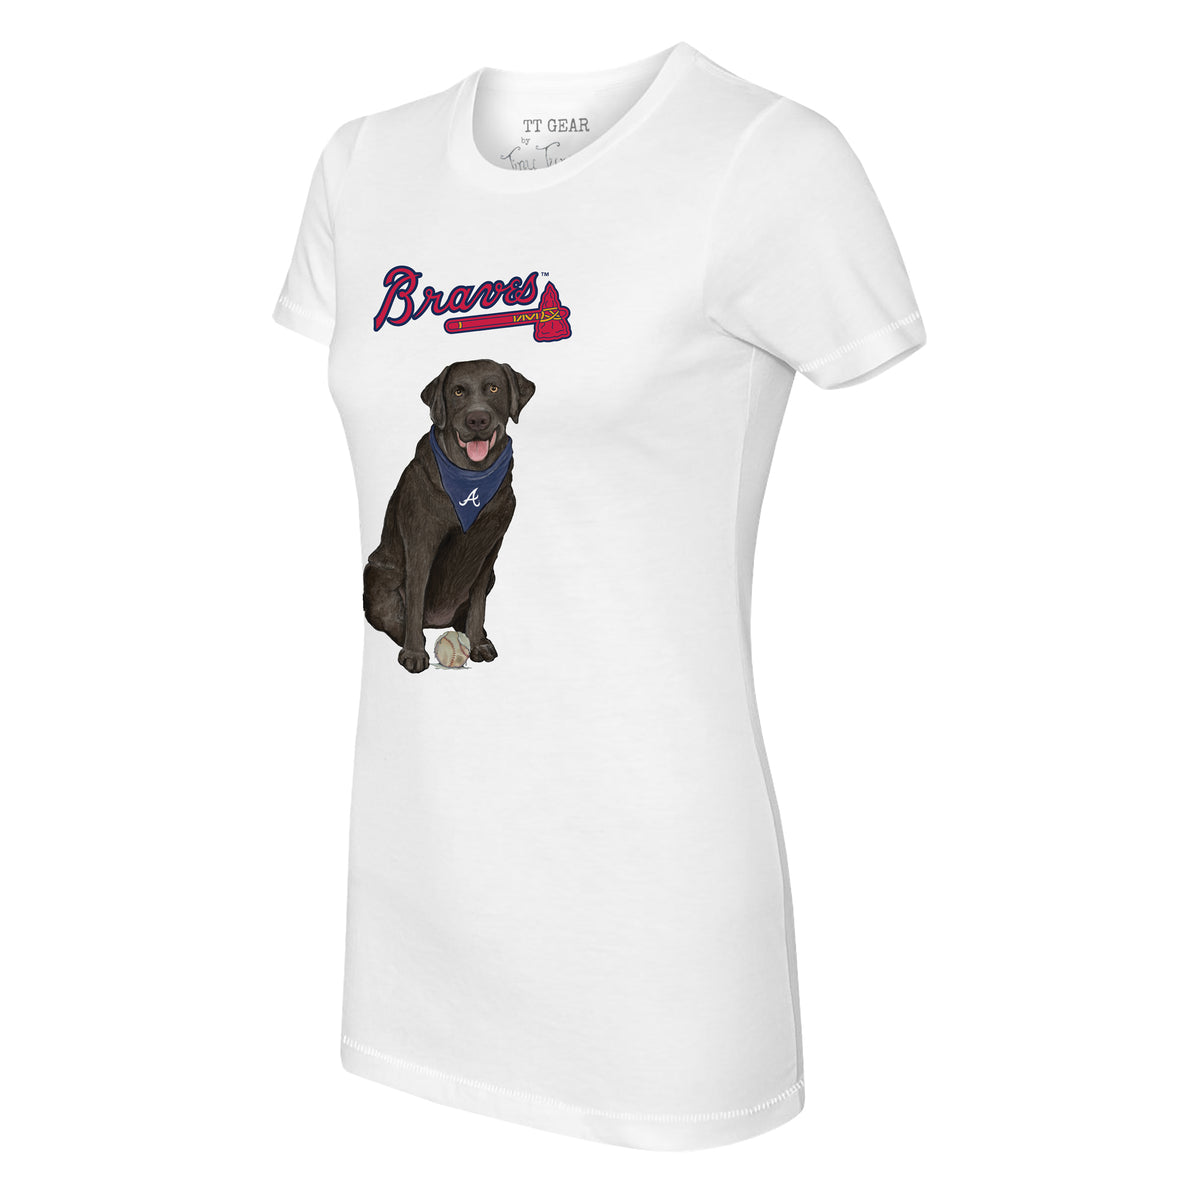 Atlanta Braves Black Labrador Retriever Tee Shirt